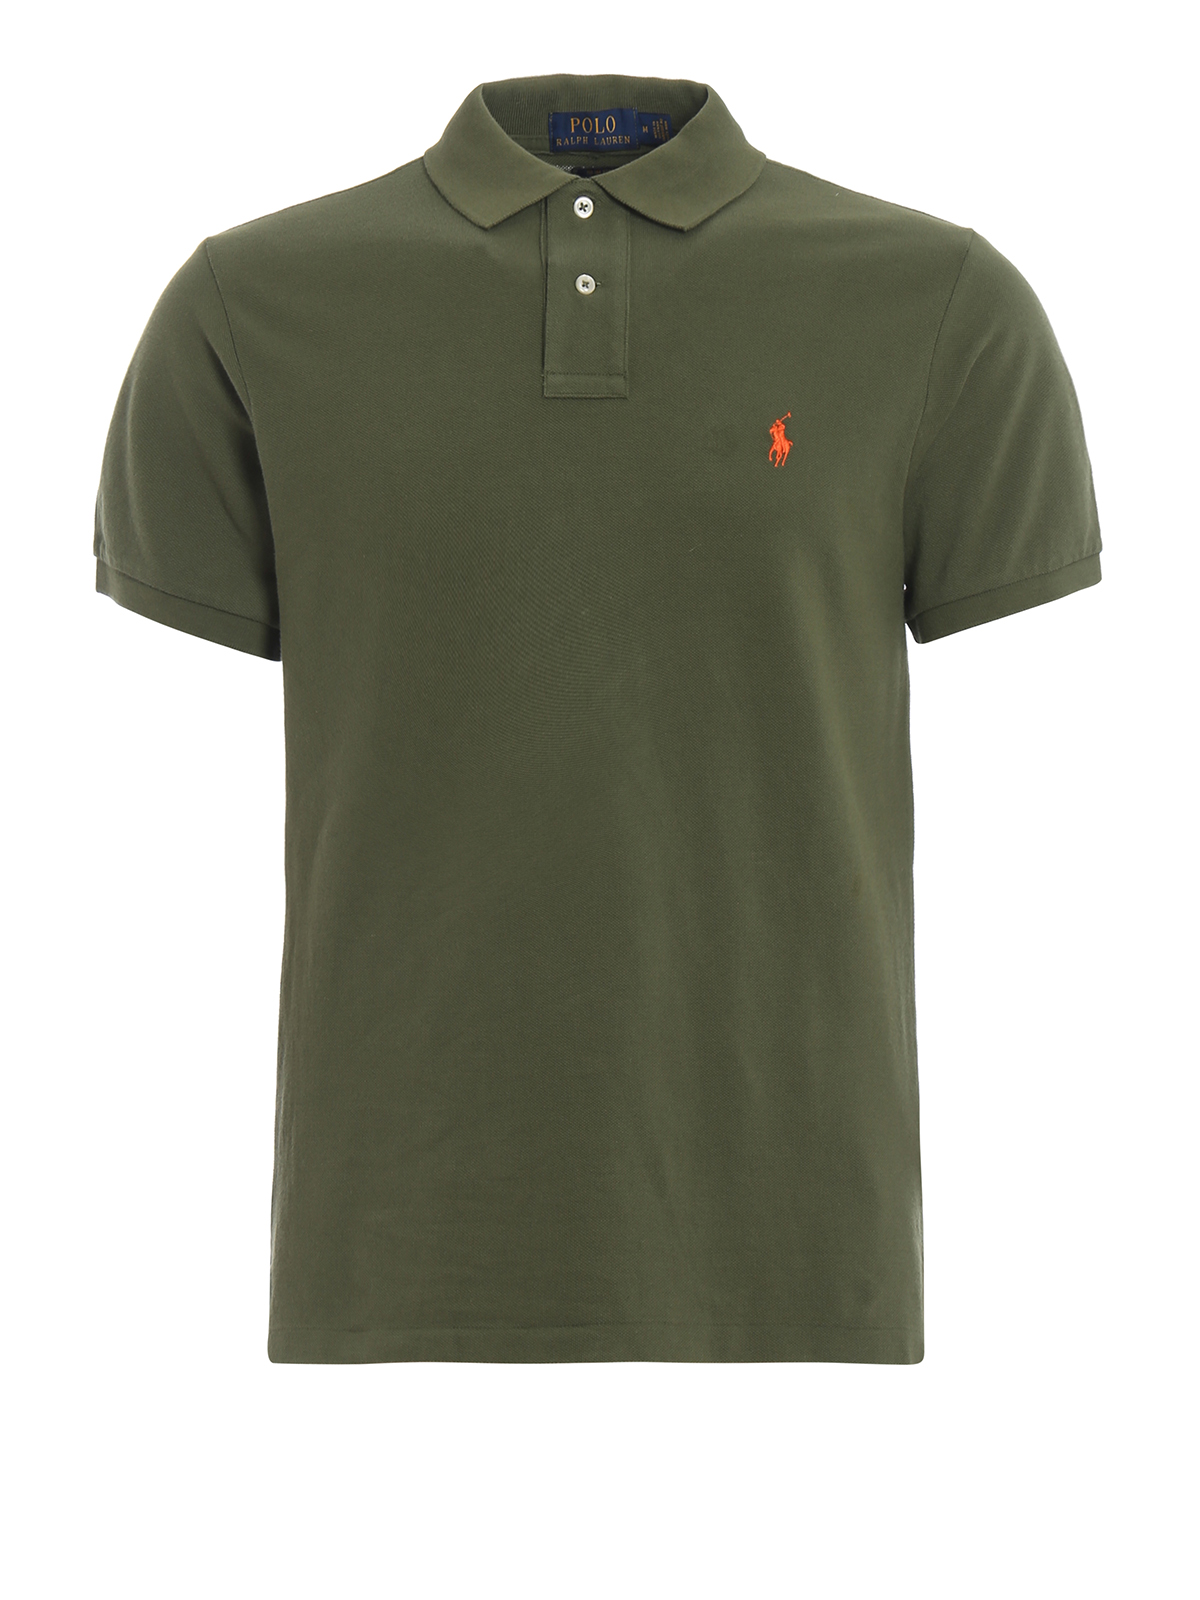 Polo shirts Polo Ralph Lauren - Classic green polo shirt in pique cotton -  710536856163